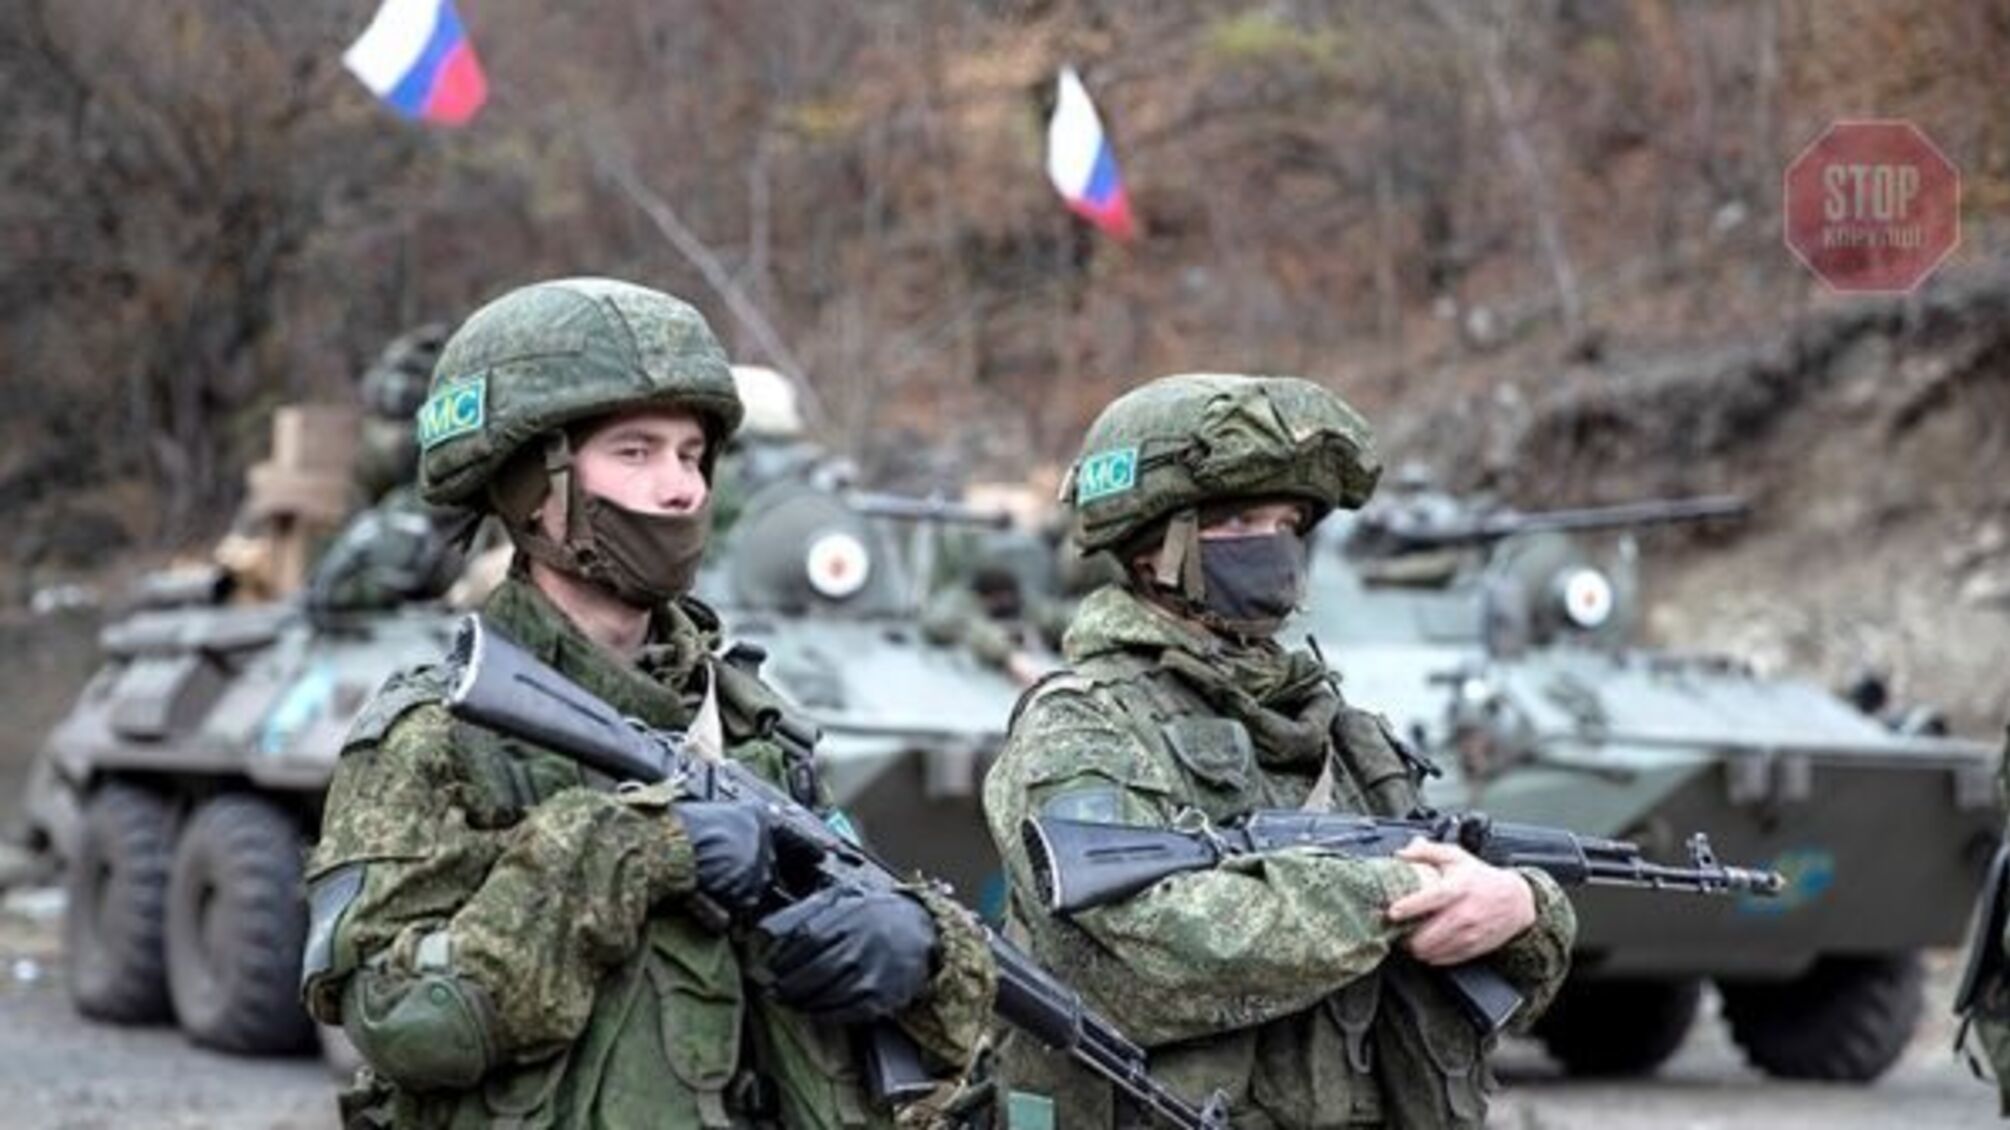 НАТО: Россия разместила в Беларуси наибольшее количество войск со времен холодной войны